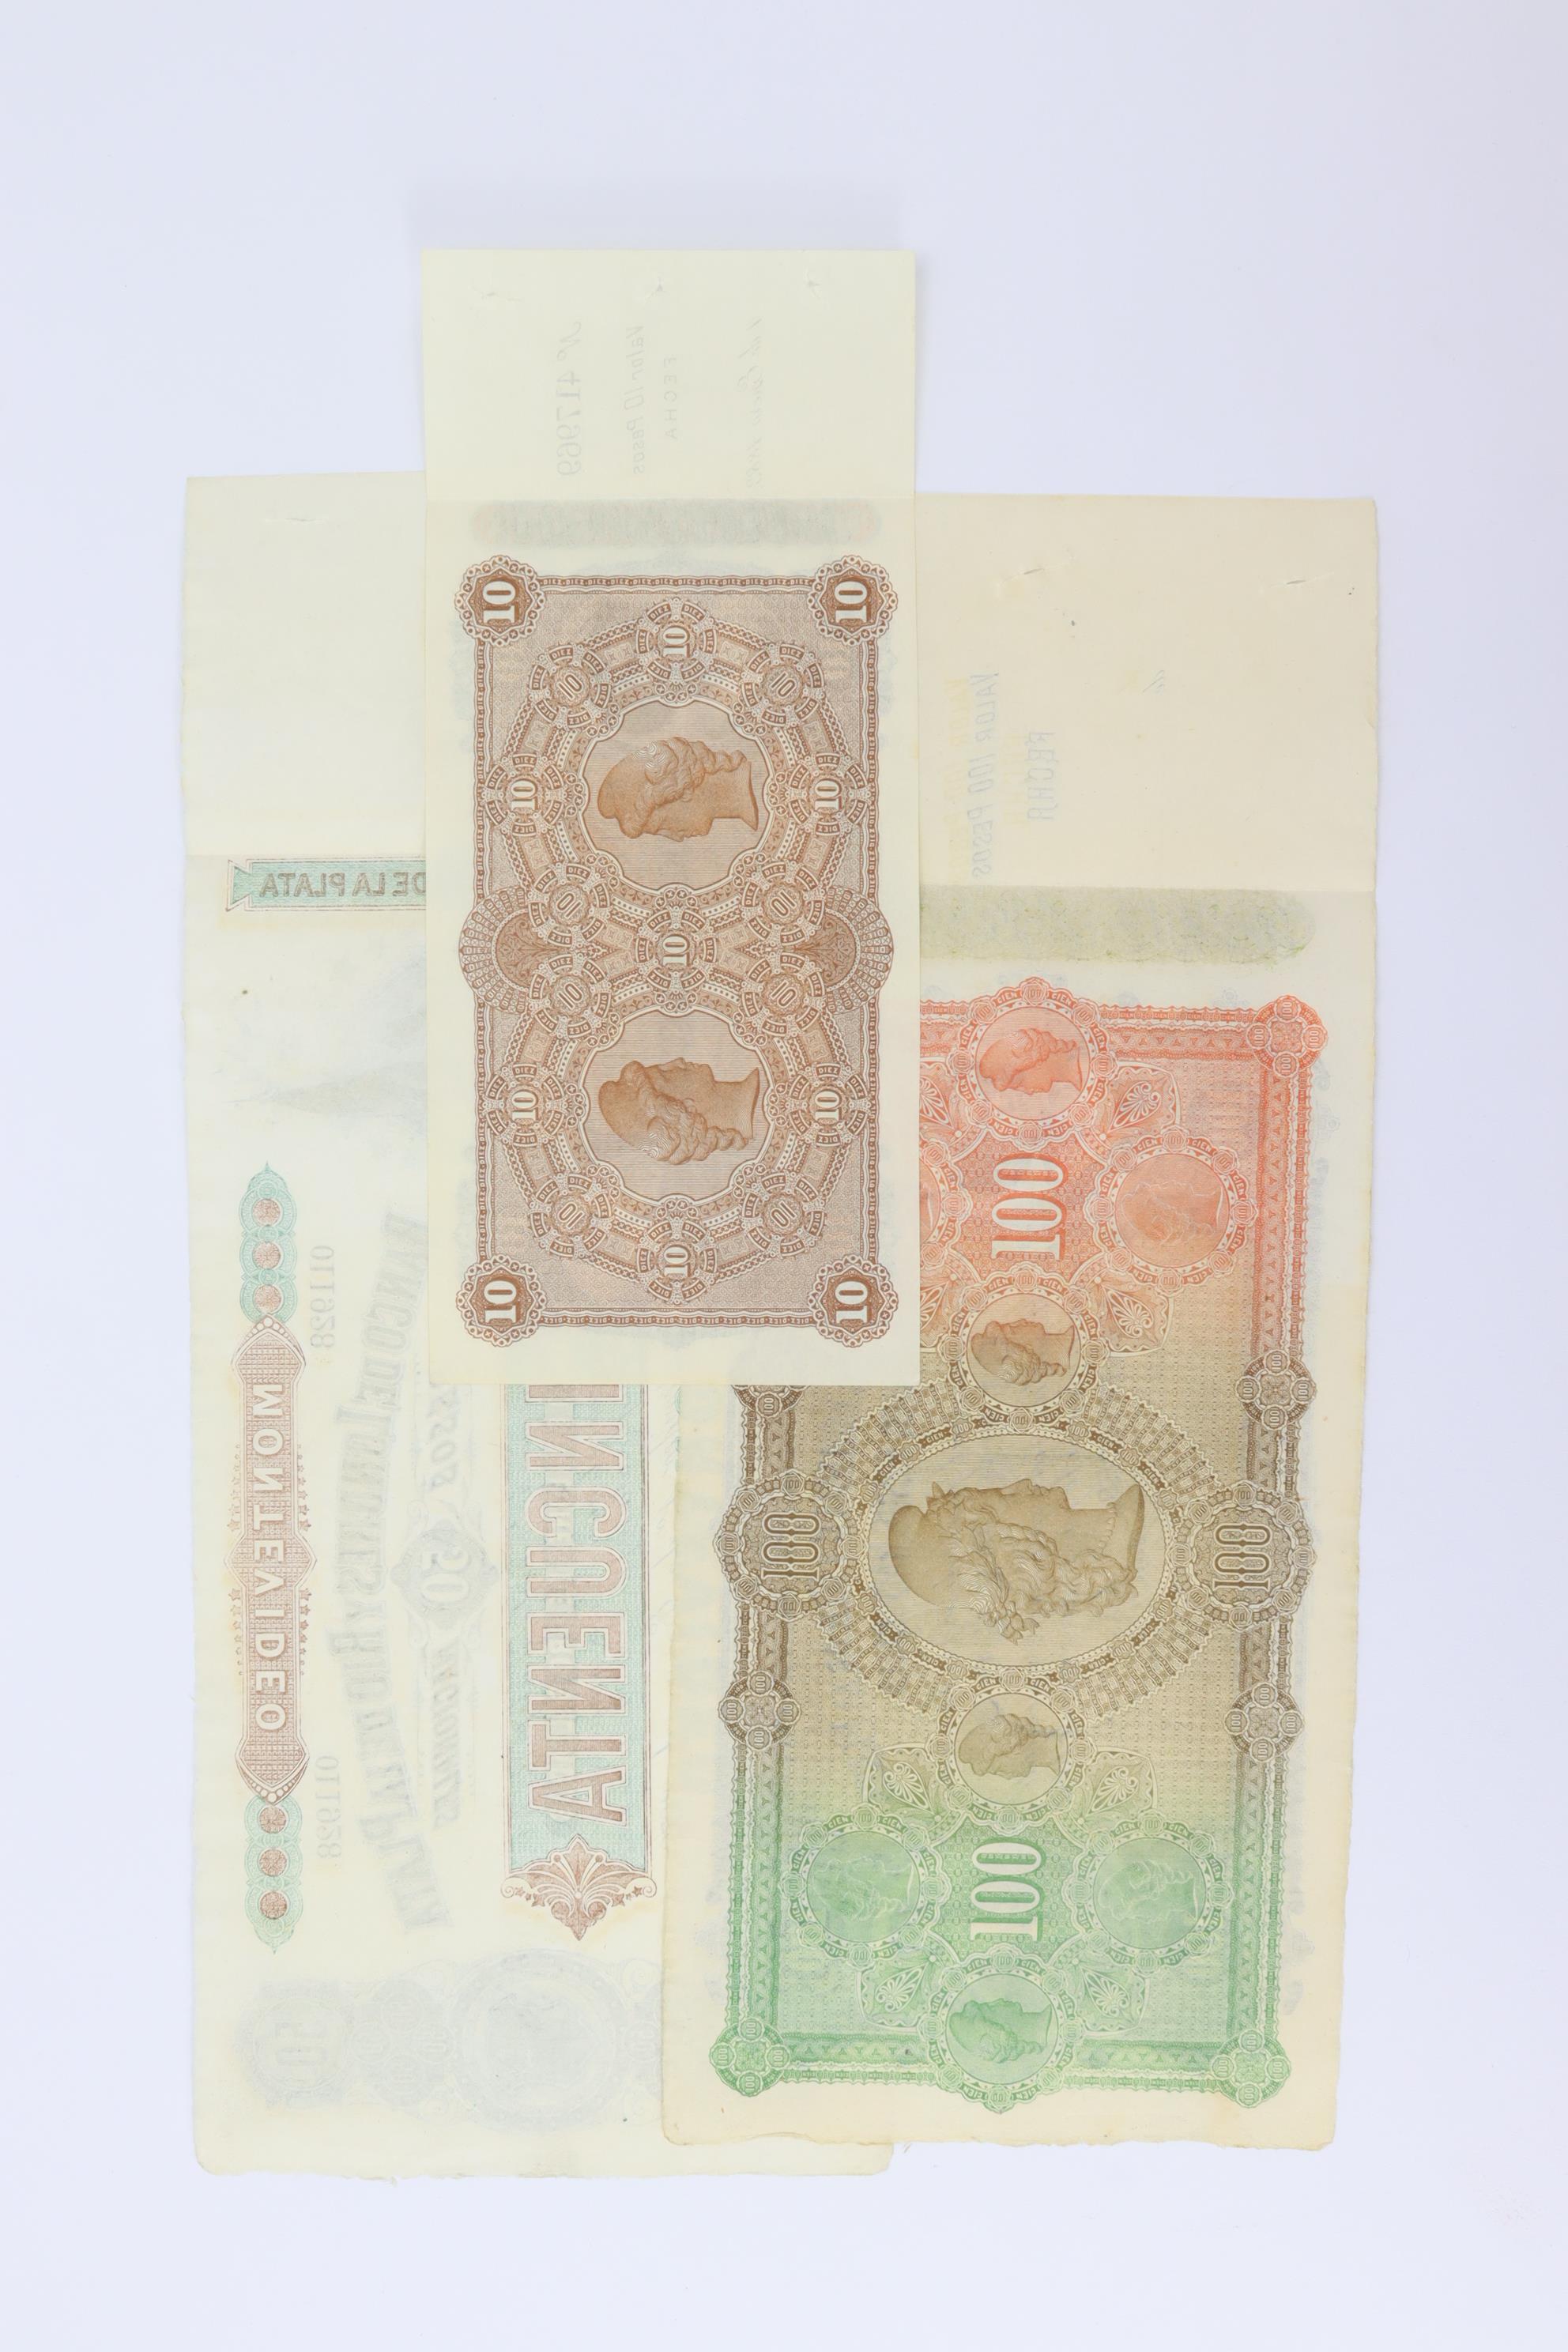 Uruguay (3), Banco de Londres y Rio de la Plata 100 Pesos, 50 Pesos & 10 Pesos dated 23rd June 1862, - Image 2 of 2